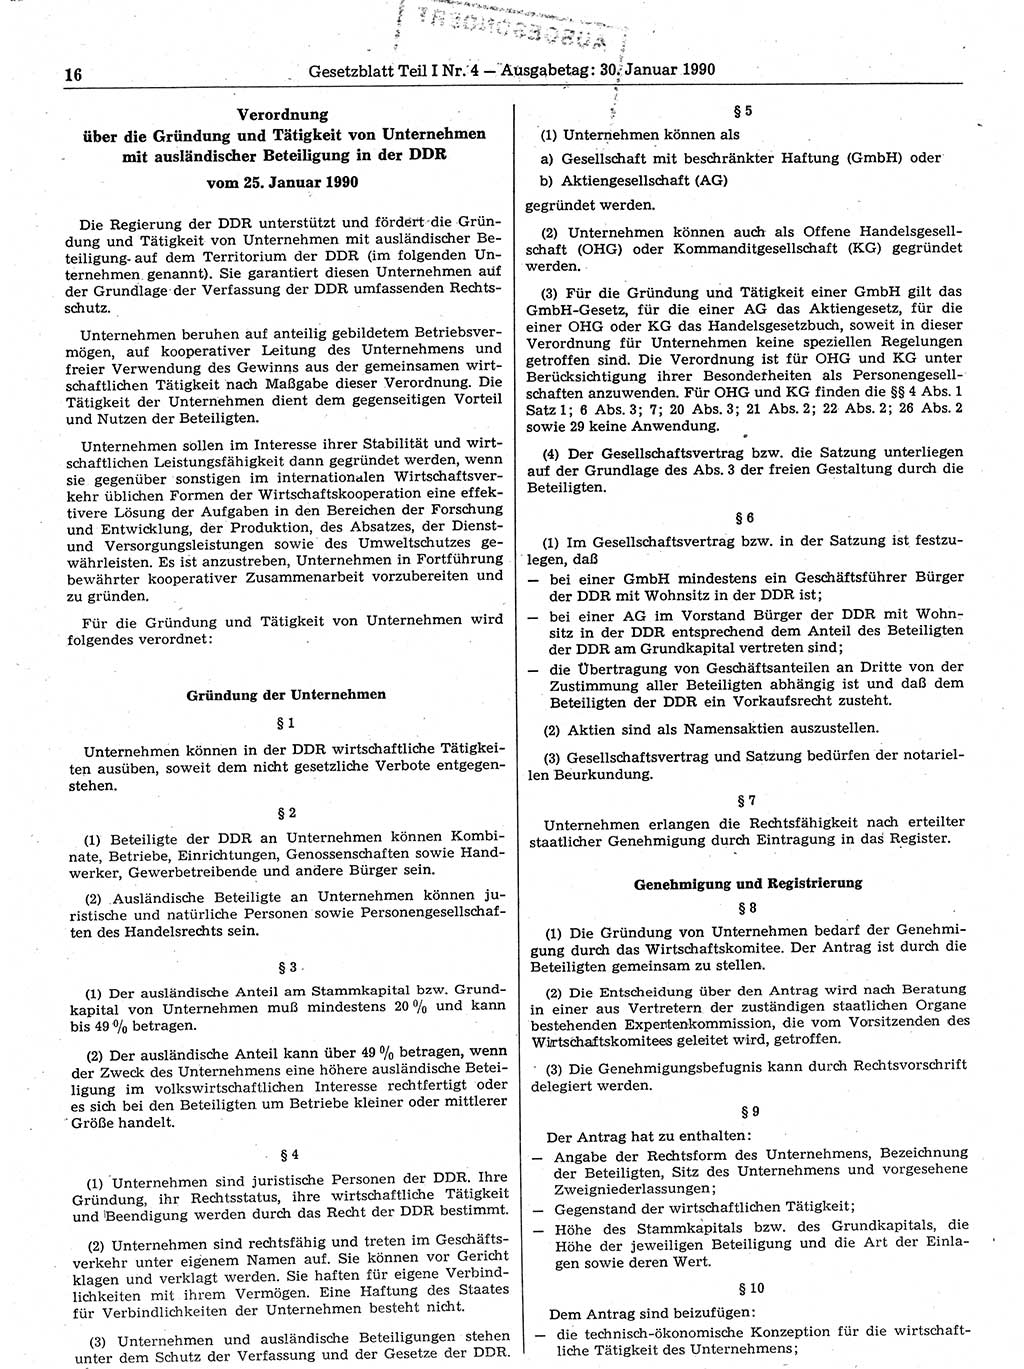 Gesetzblatt (GBl.) der Deutschen Demokratischen Republik (DDR) Teil Ⅰ 1990, Seite 16 (GBl. DDR Ⅰ 1990, S. 16)